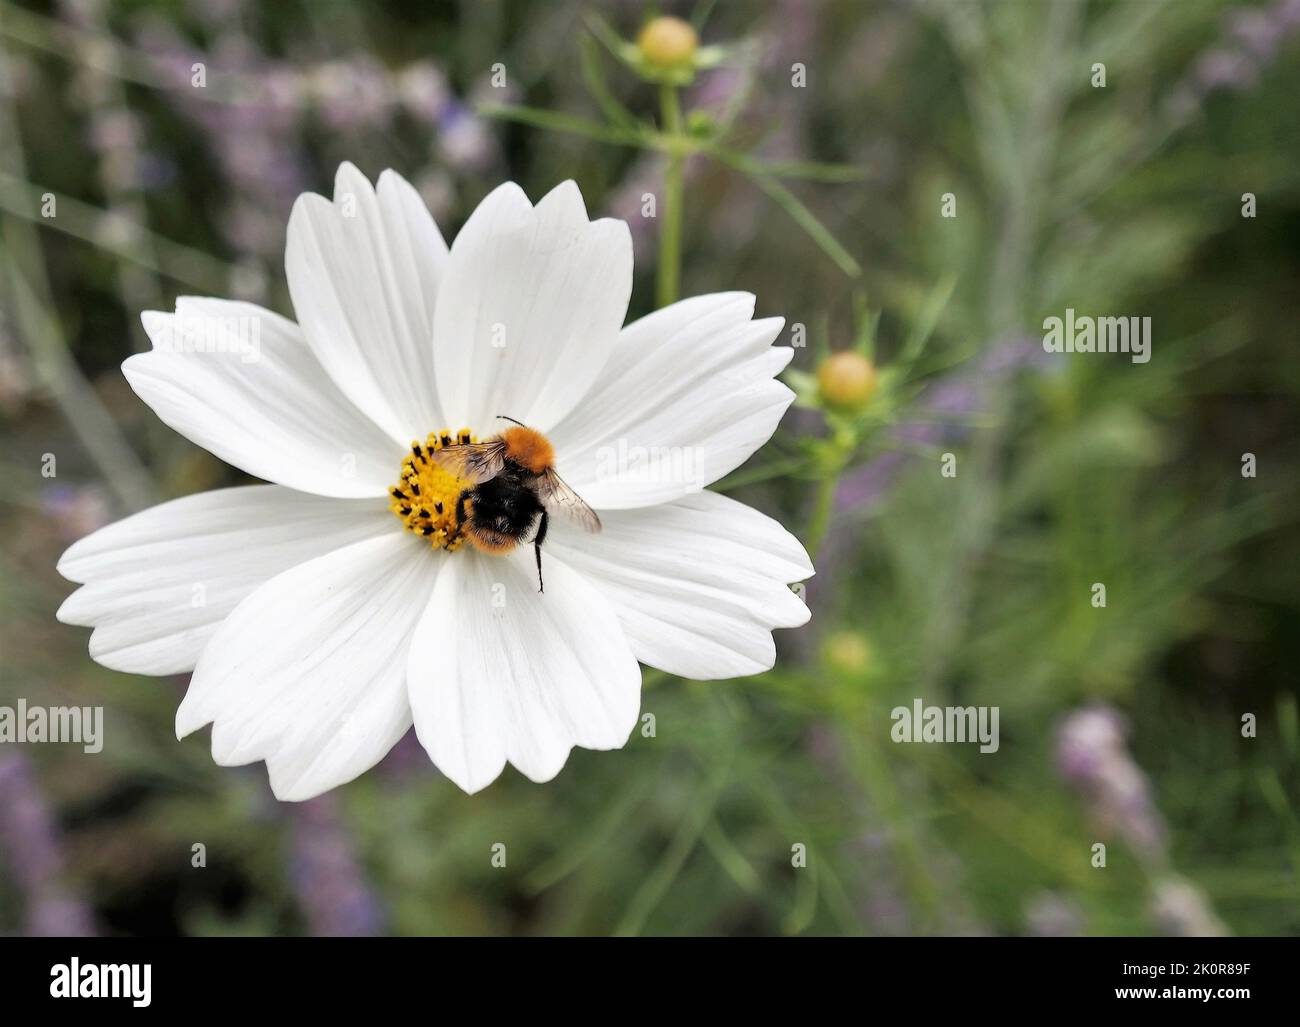 Eine Hummel sammelt Pollen von einer weißen Wildblume in einem grünen Garten. Natürlicher Hintergrund, mit Textbereich rechts. Ökologisches Konzept. Stockfoto